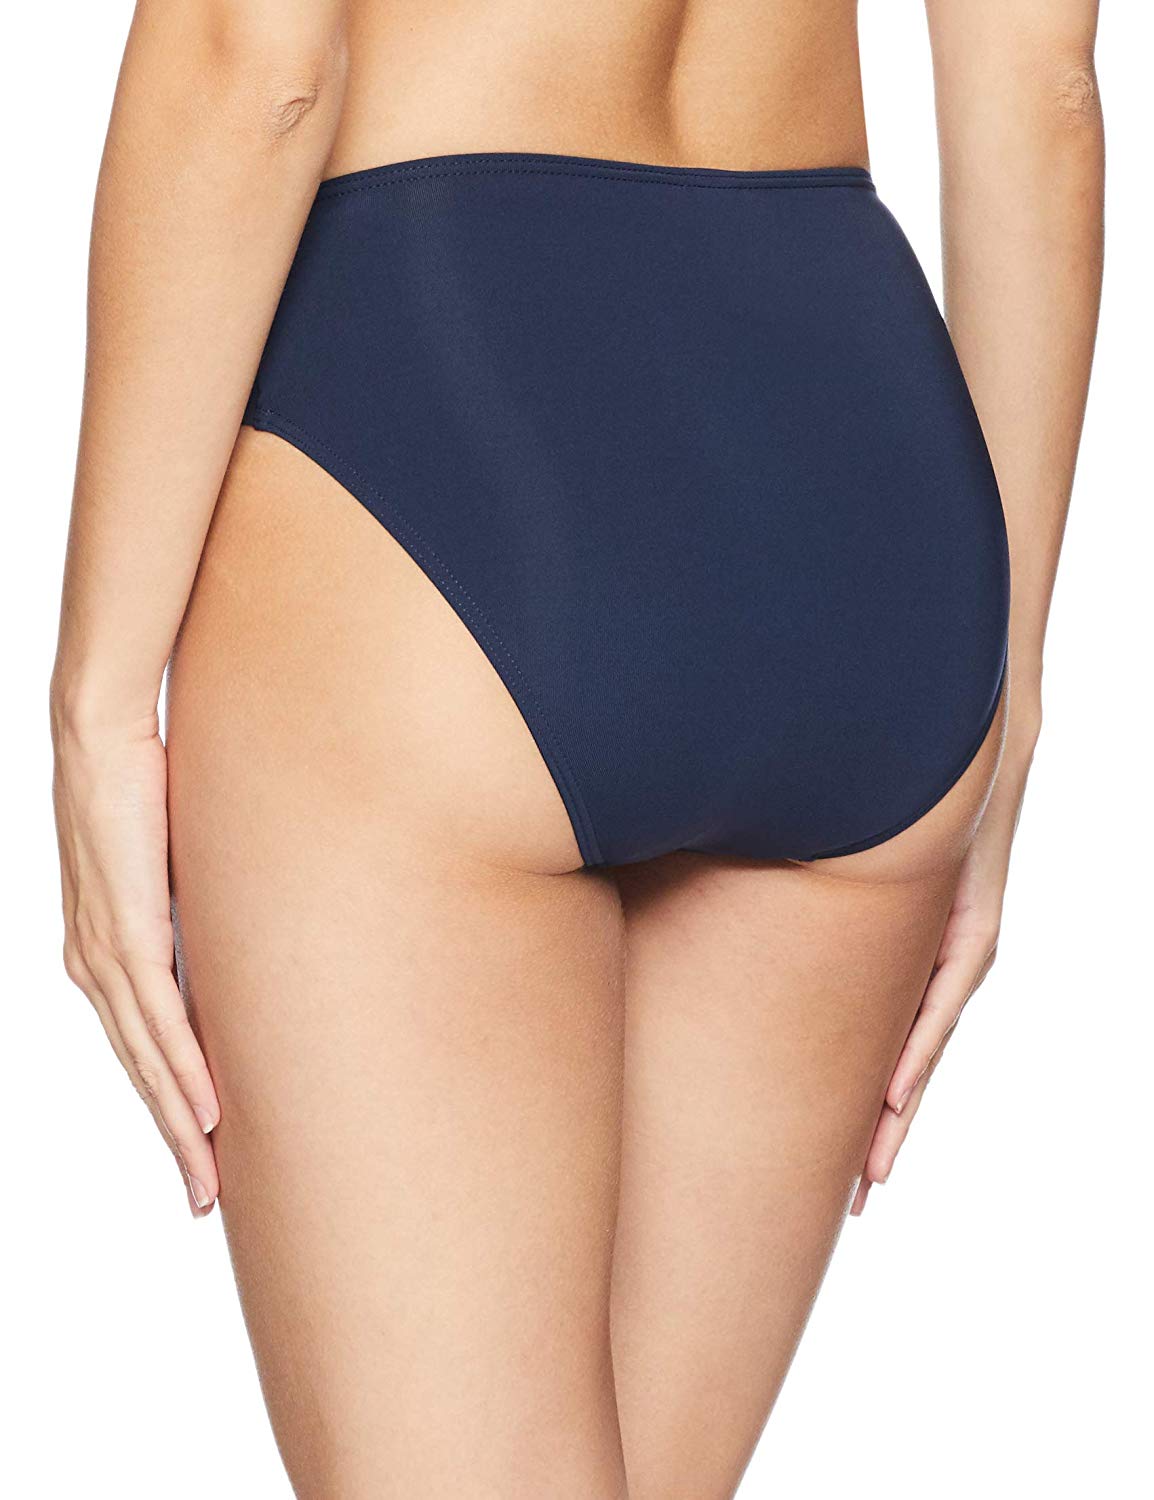 Jets by Jessika Allen Women's Jetset Full Coverage Bikini Bottom Swimsuit